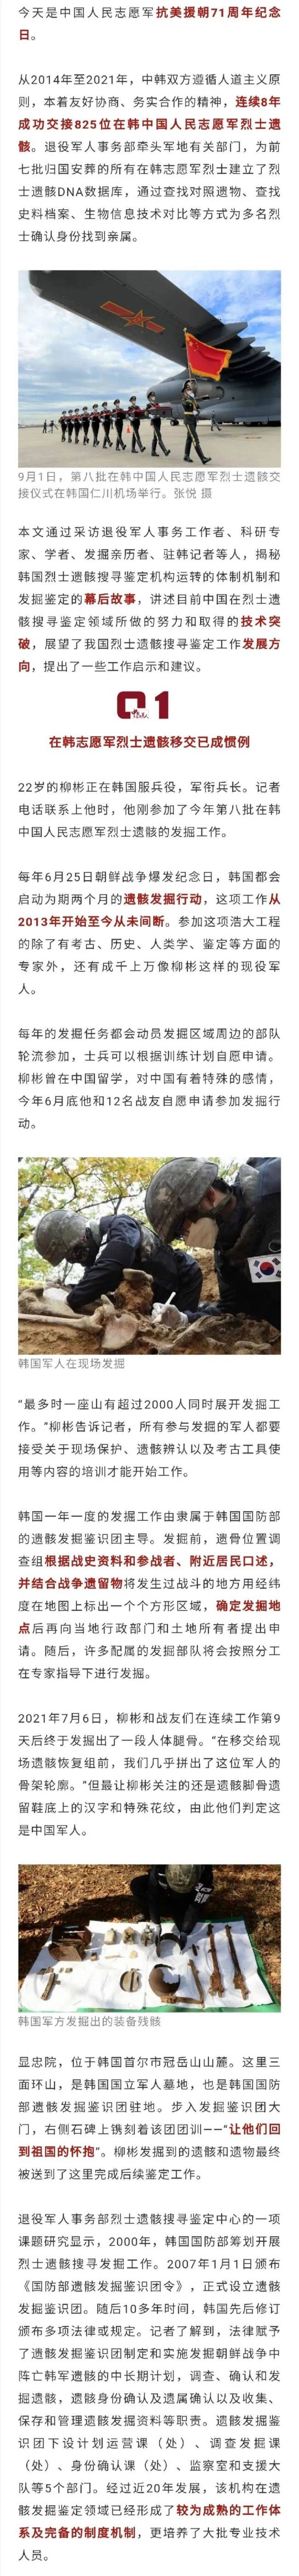 大量在韩中国人民志愿军烈士遗骸搜寻鉴定细节曝光